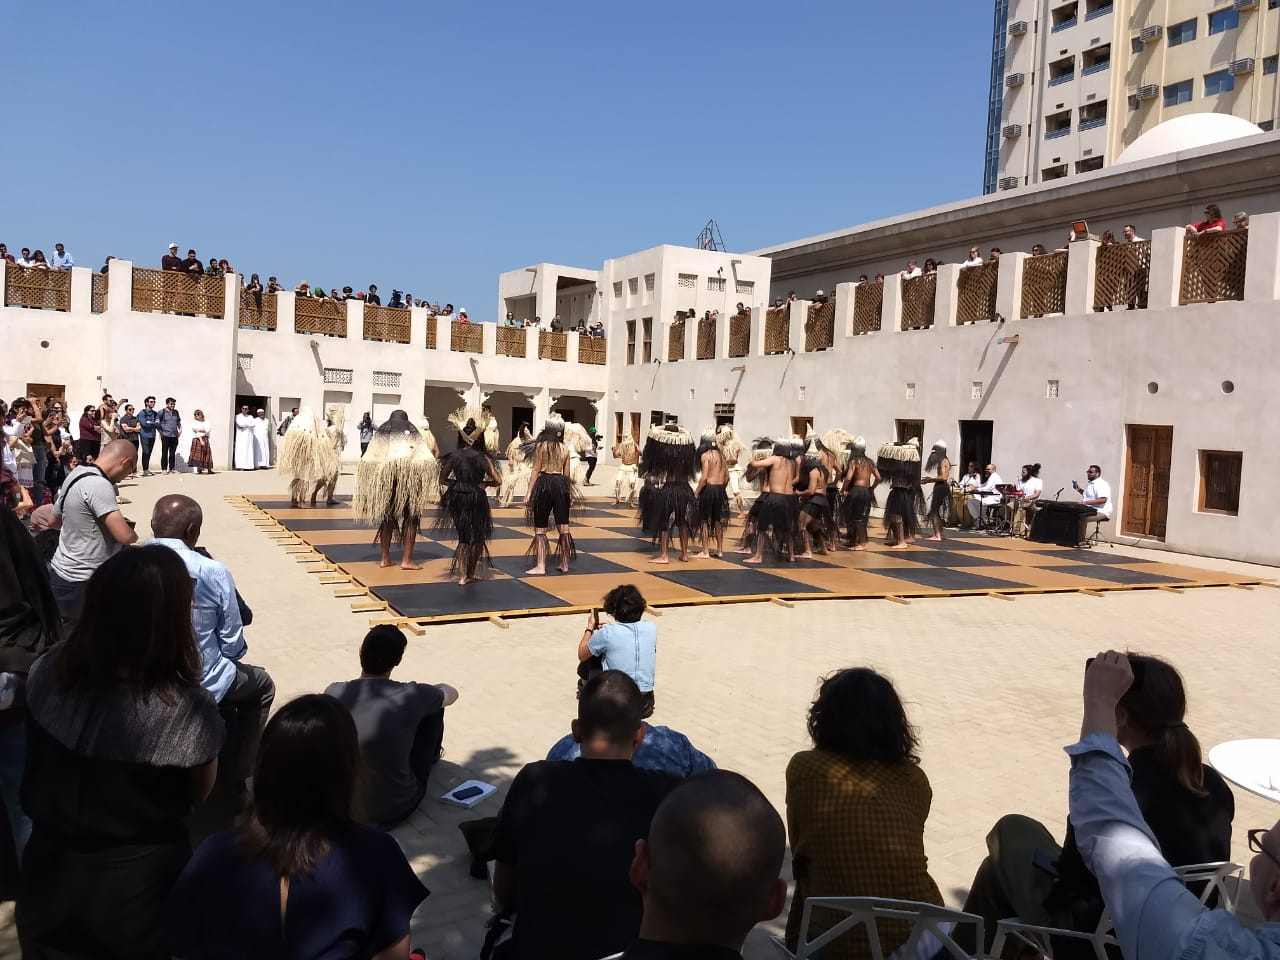 Danzantes en una plaza pública. Bienal de Sharjah.